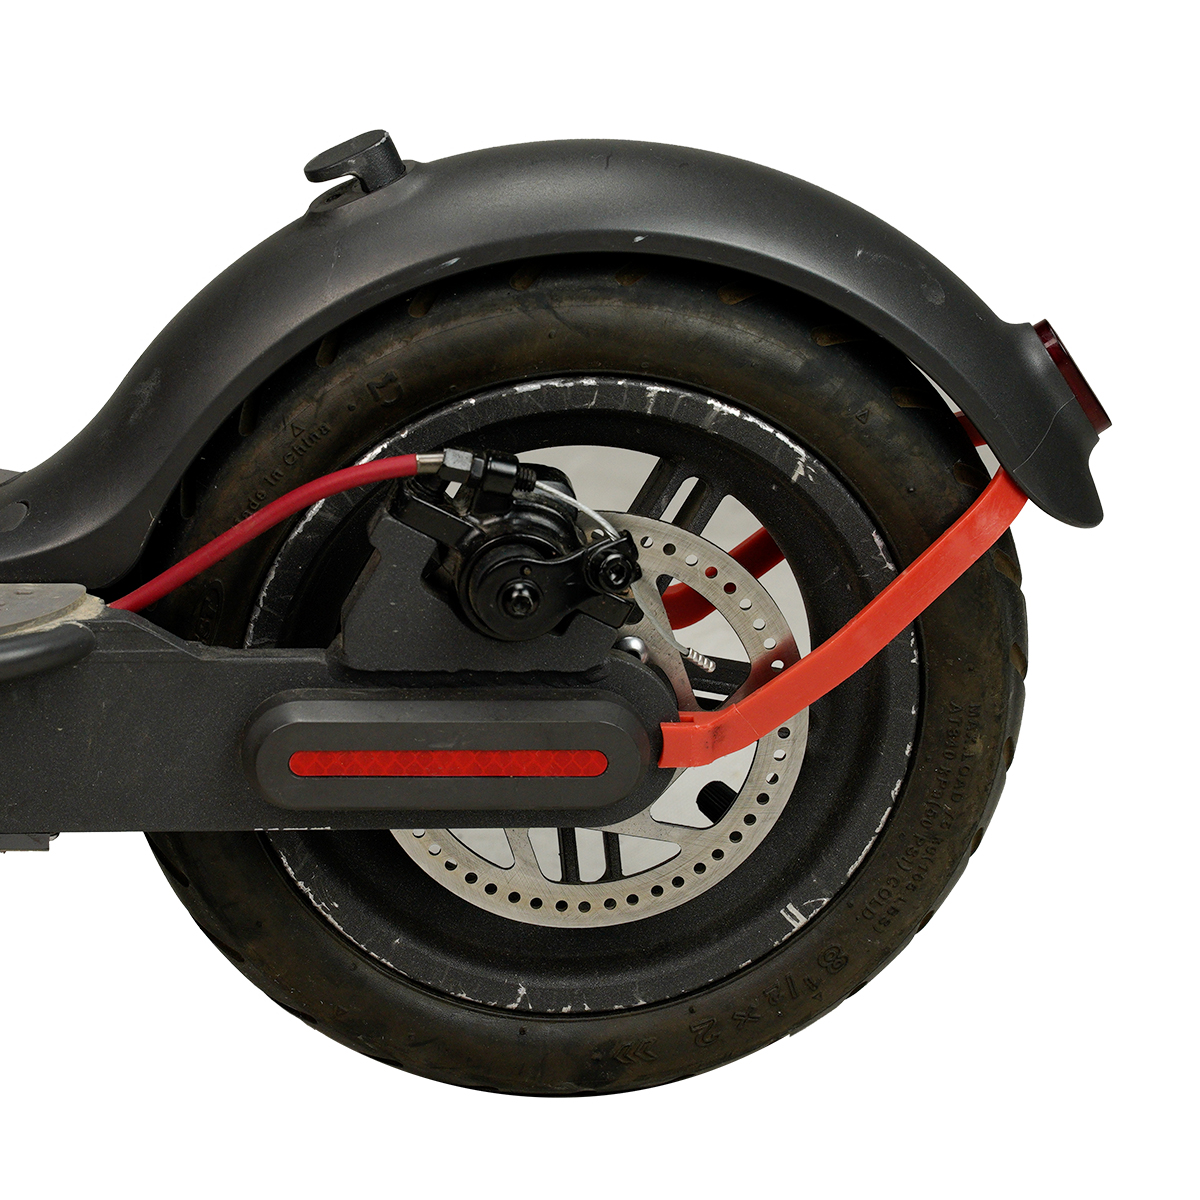 7PCS vermelho / preto / branco inicial acessórios modificados para M365 / M187 / Pro scooter elétrico